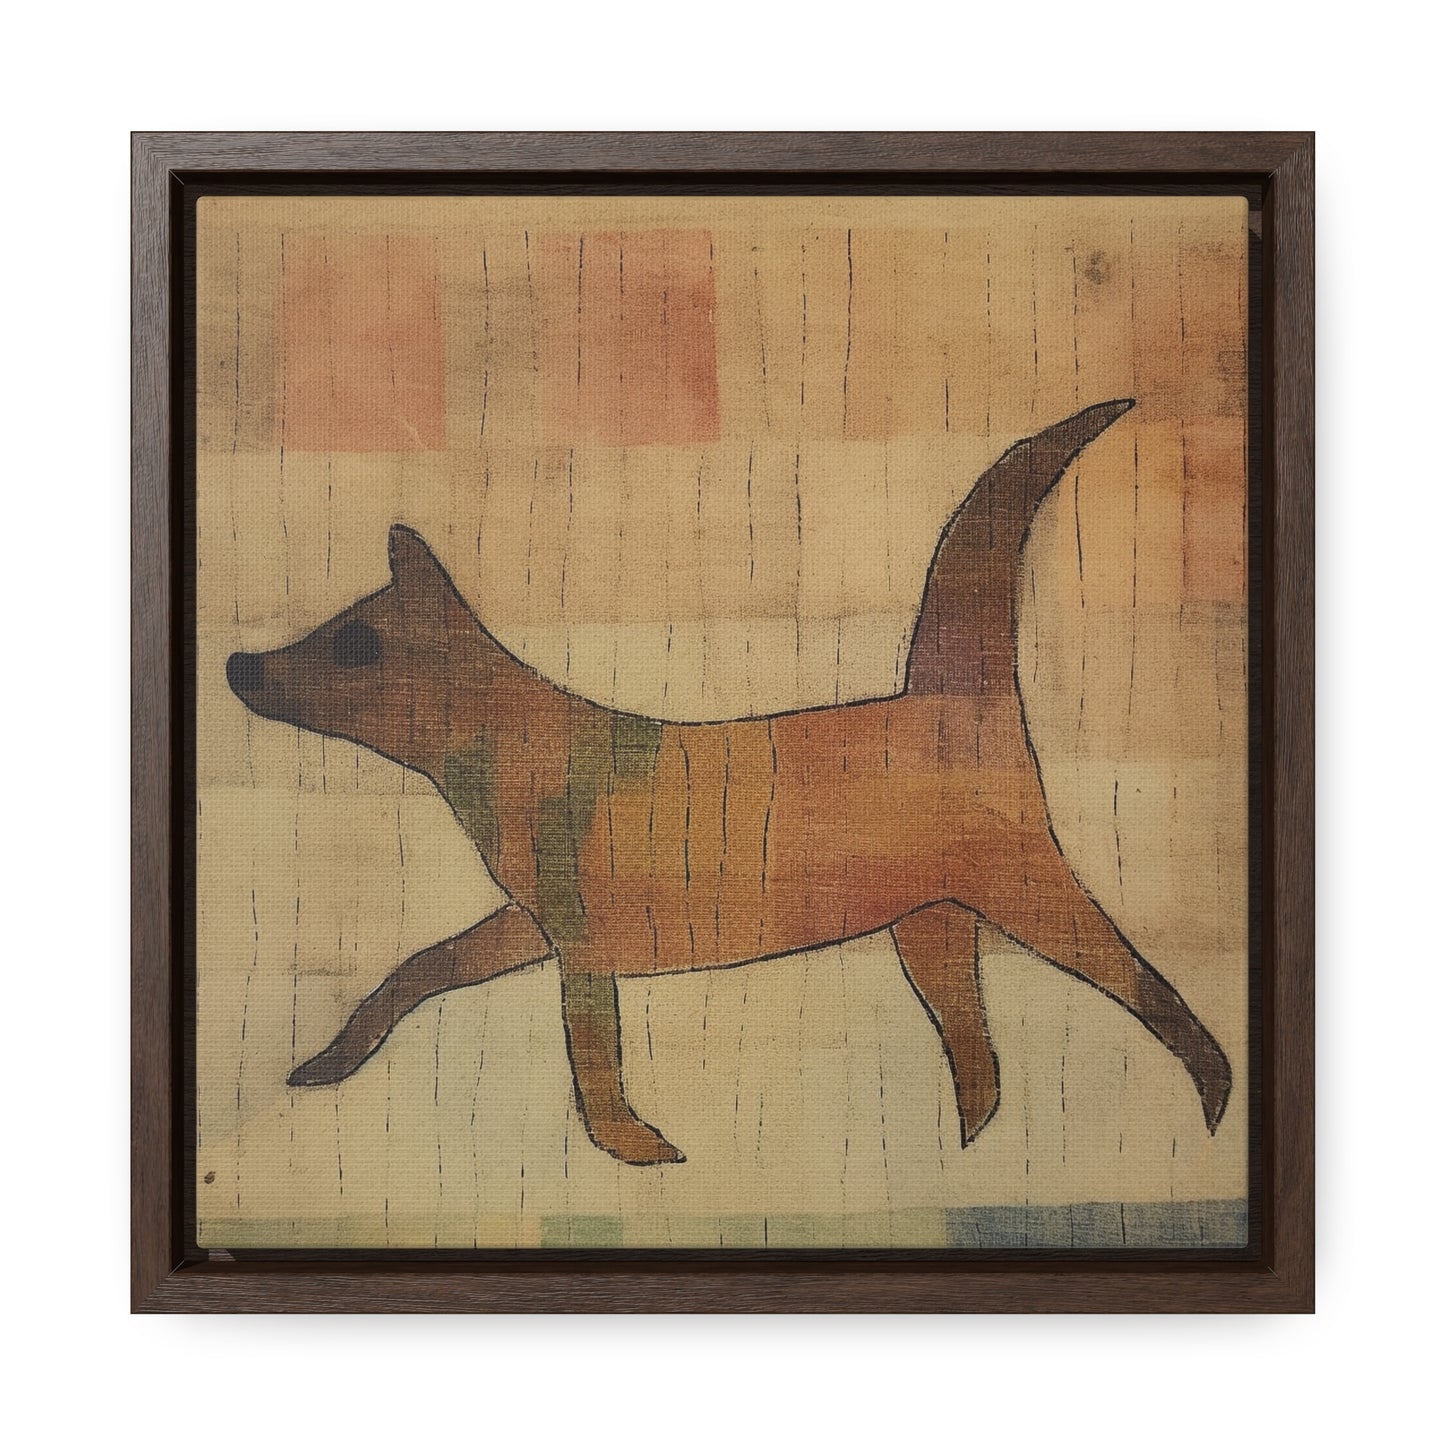 V Dog 6, Gallery Canvas Wraps, Square Frame